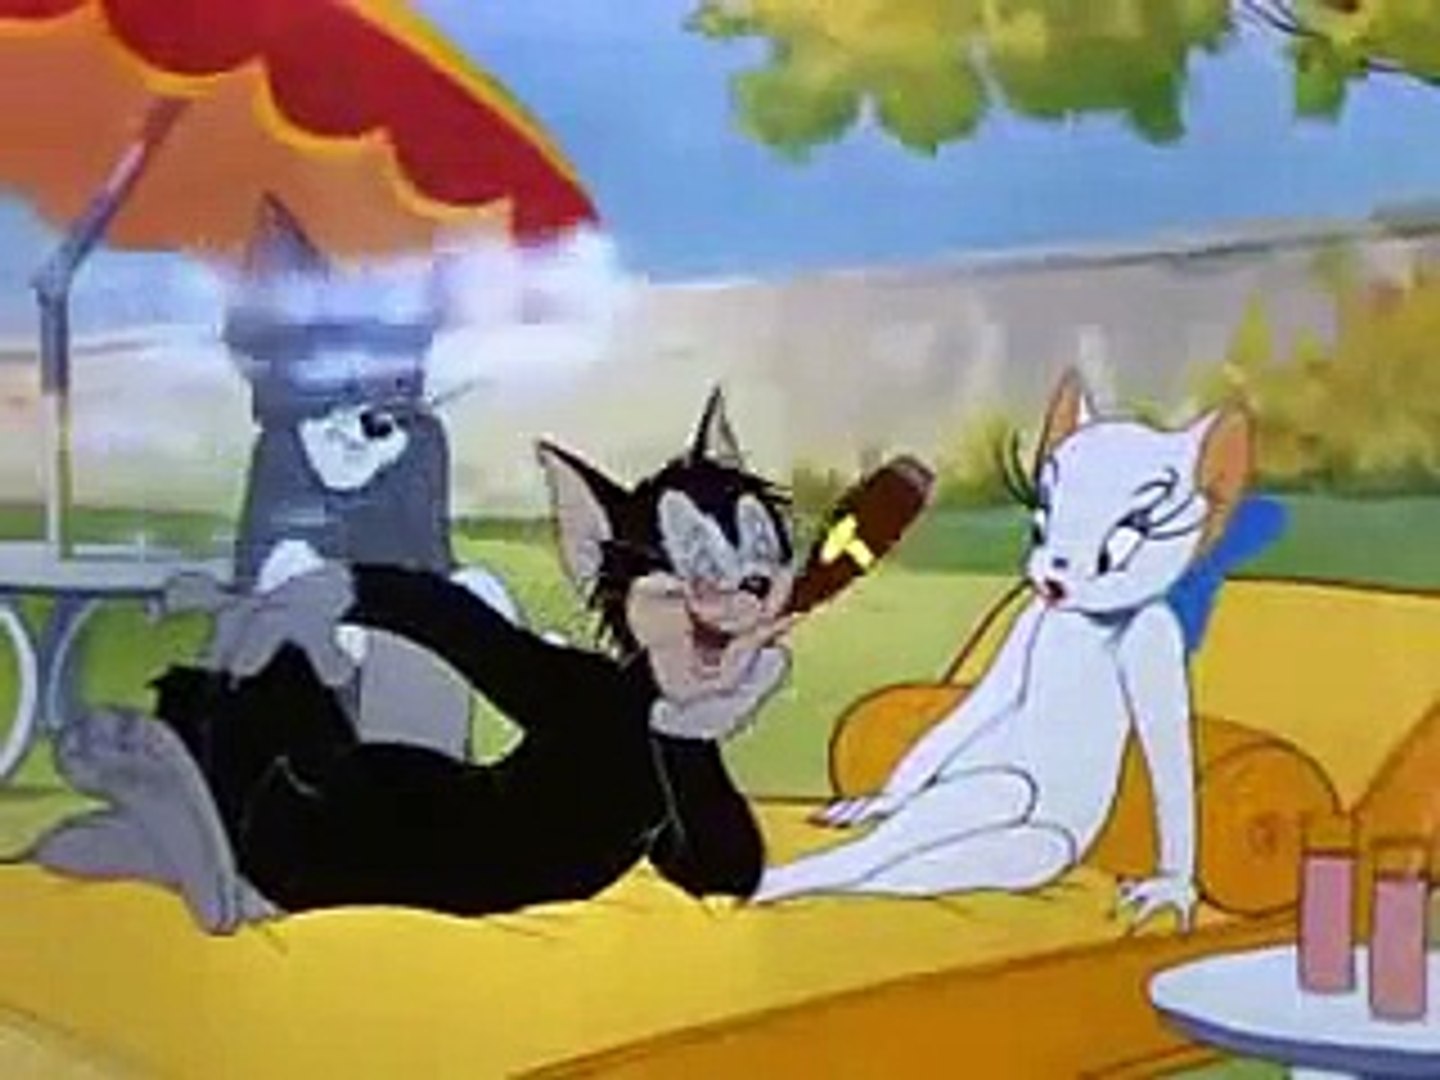 Tom and Jerry Cartoon Springtime for Thomas 2 240p